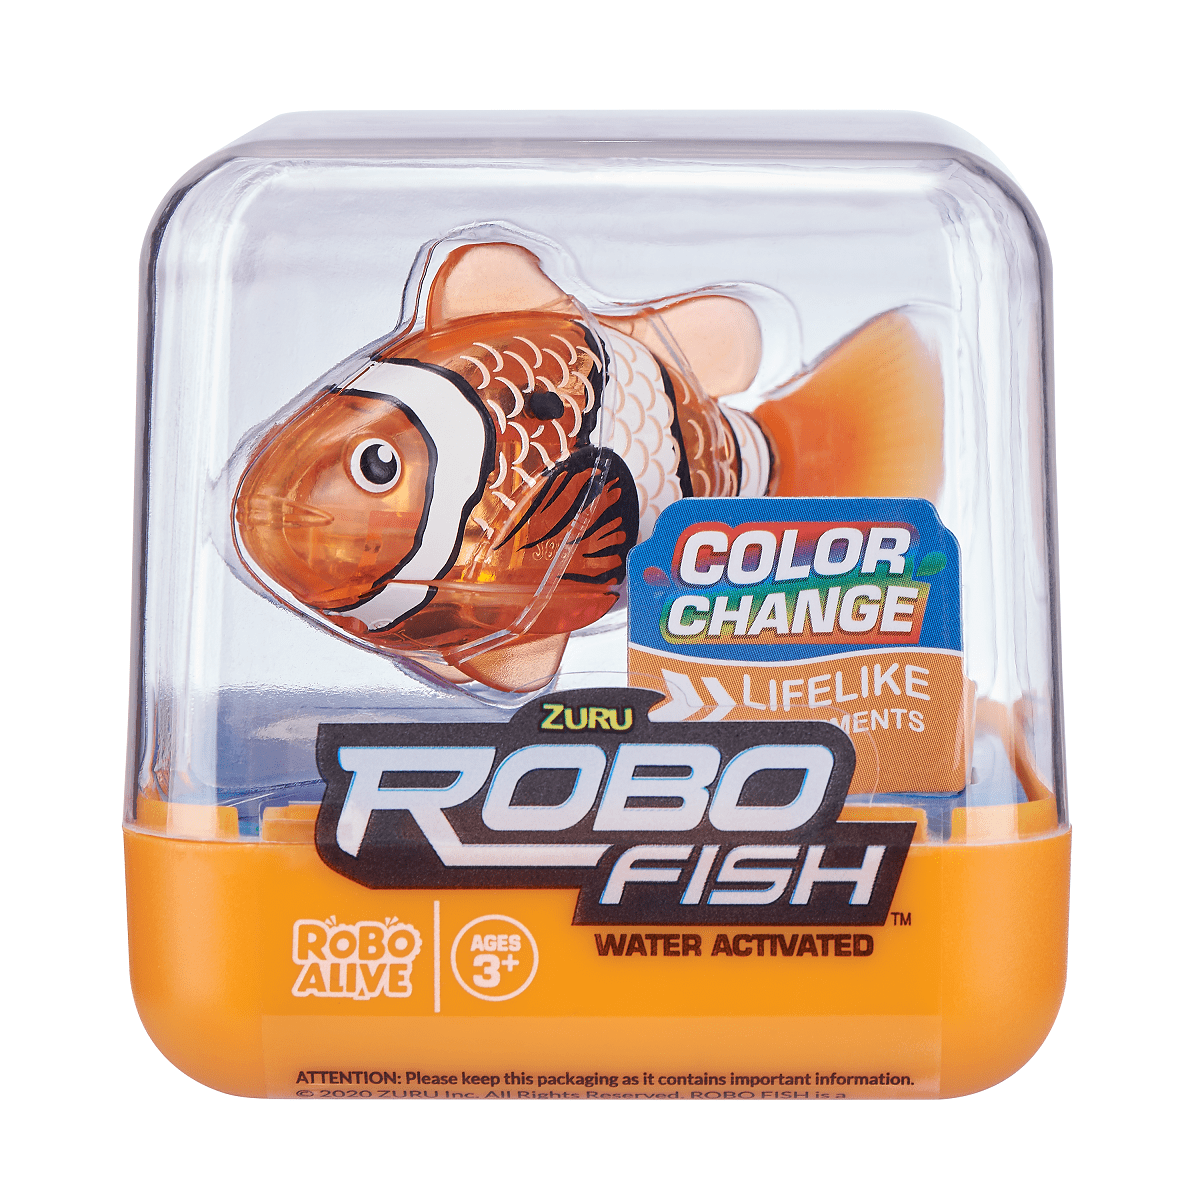 Robo Alive Electronic Interactive Fish Orange